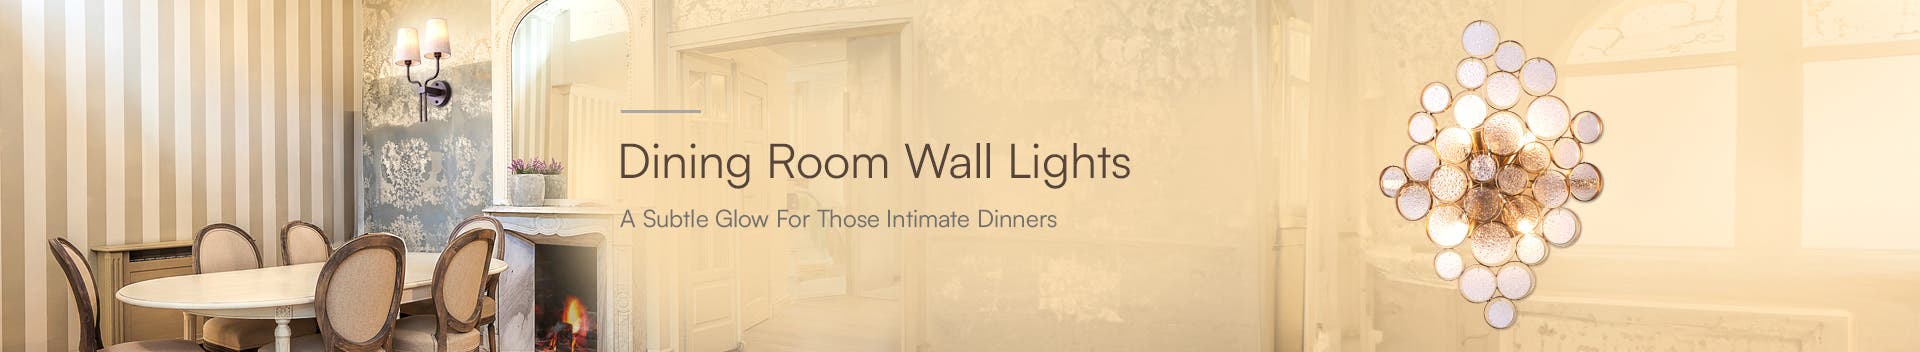 Dining Room Wall Lights